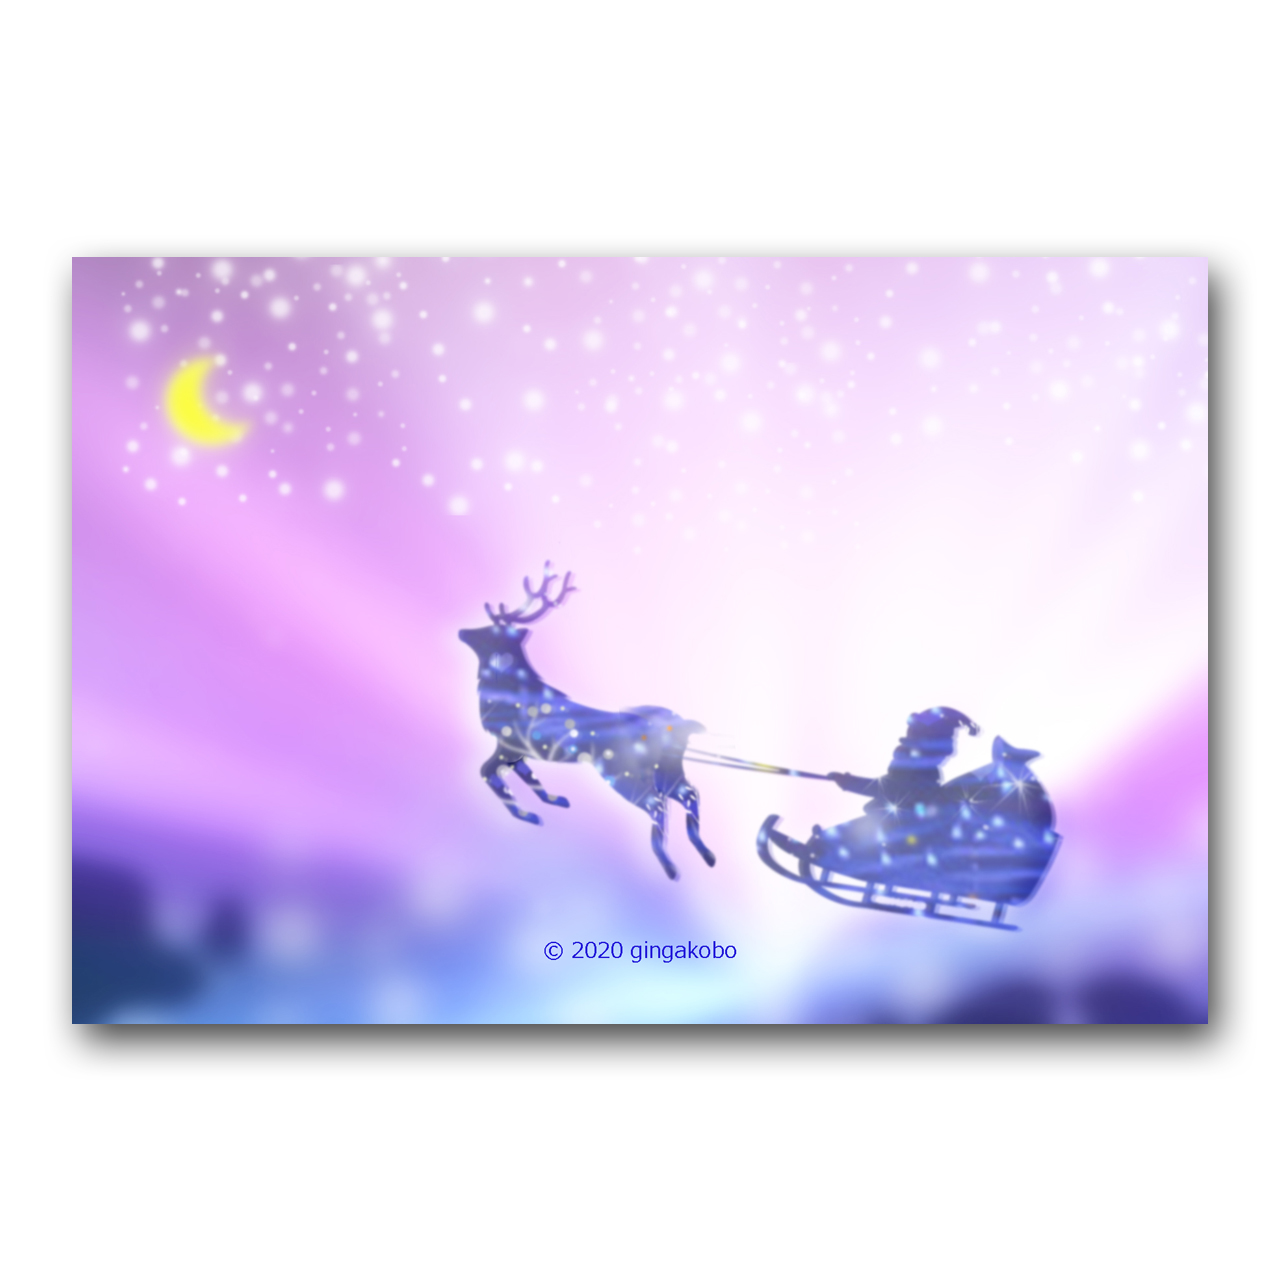 今からいくよー クリスマス サンタクロース トナカイ ほっこり癒しのイラストポストカード2枚組 No 1221 Iichi ハンドメイド クラフト作品 手仕事品の通販